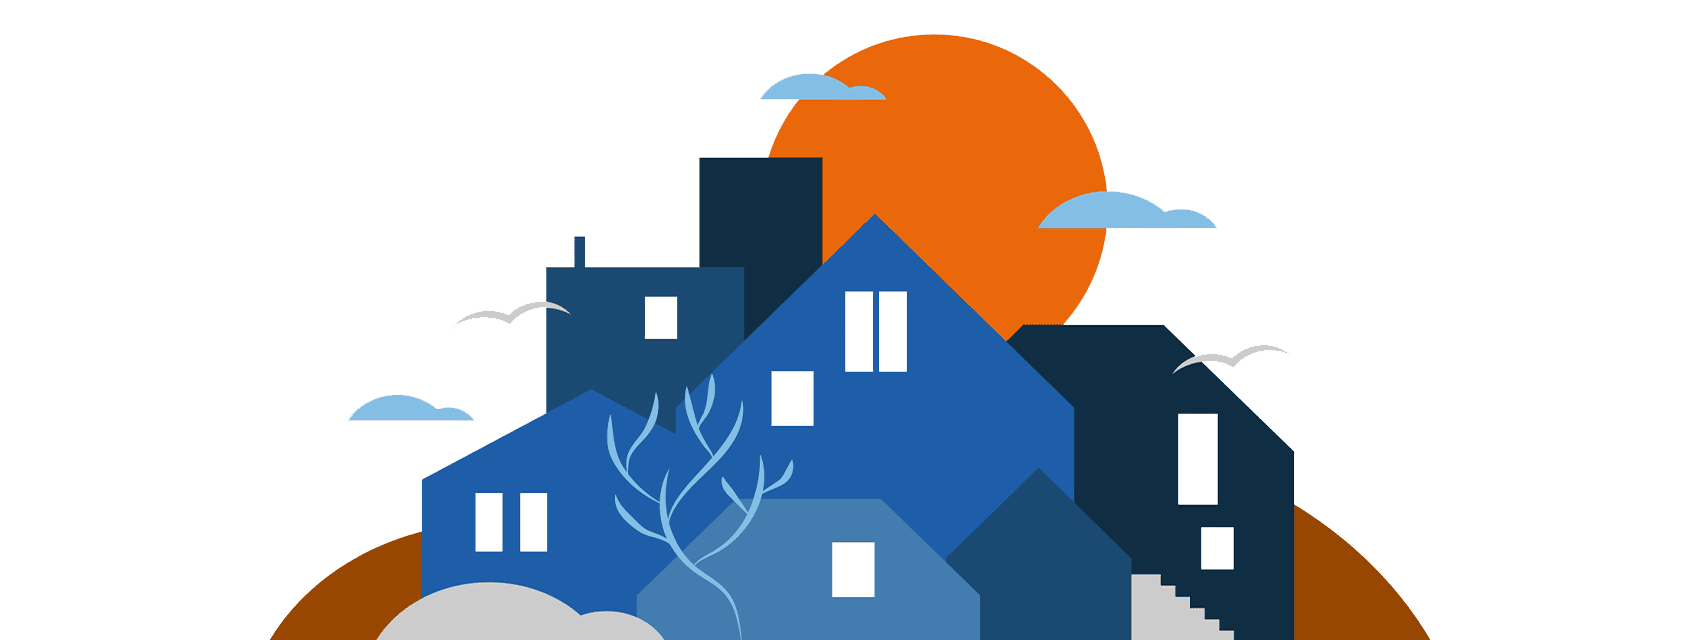 Ein illustriertes kreatives Cover zeigt verschiedene Häuser vor einer orangen Sonne.